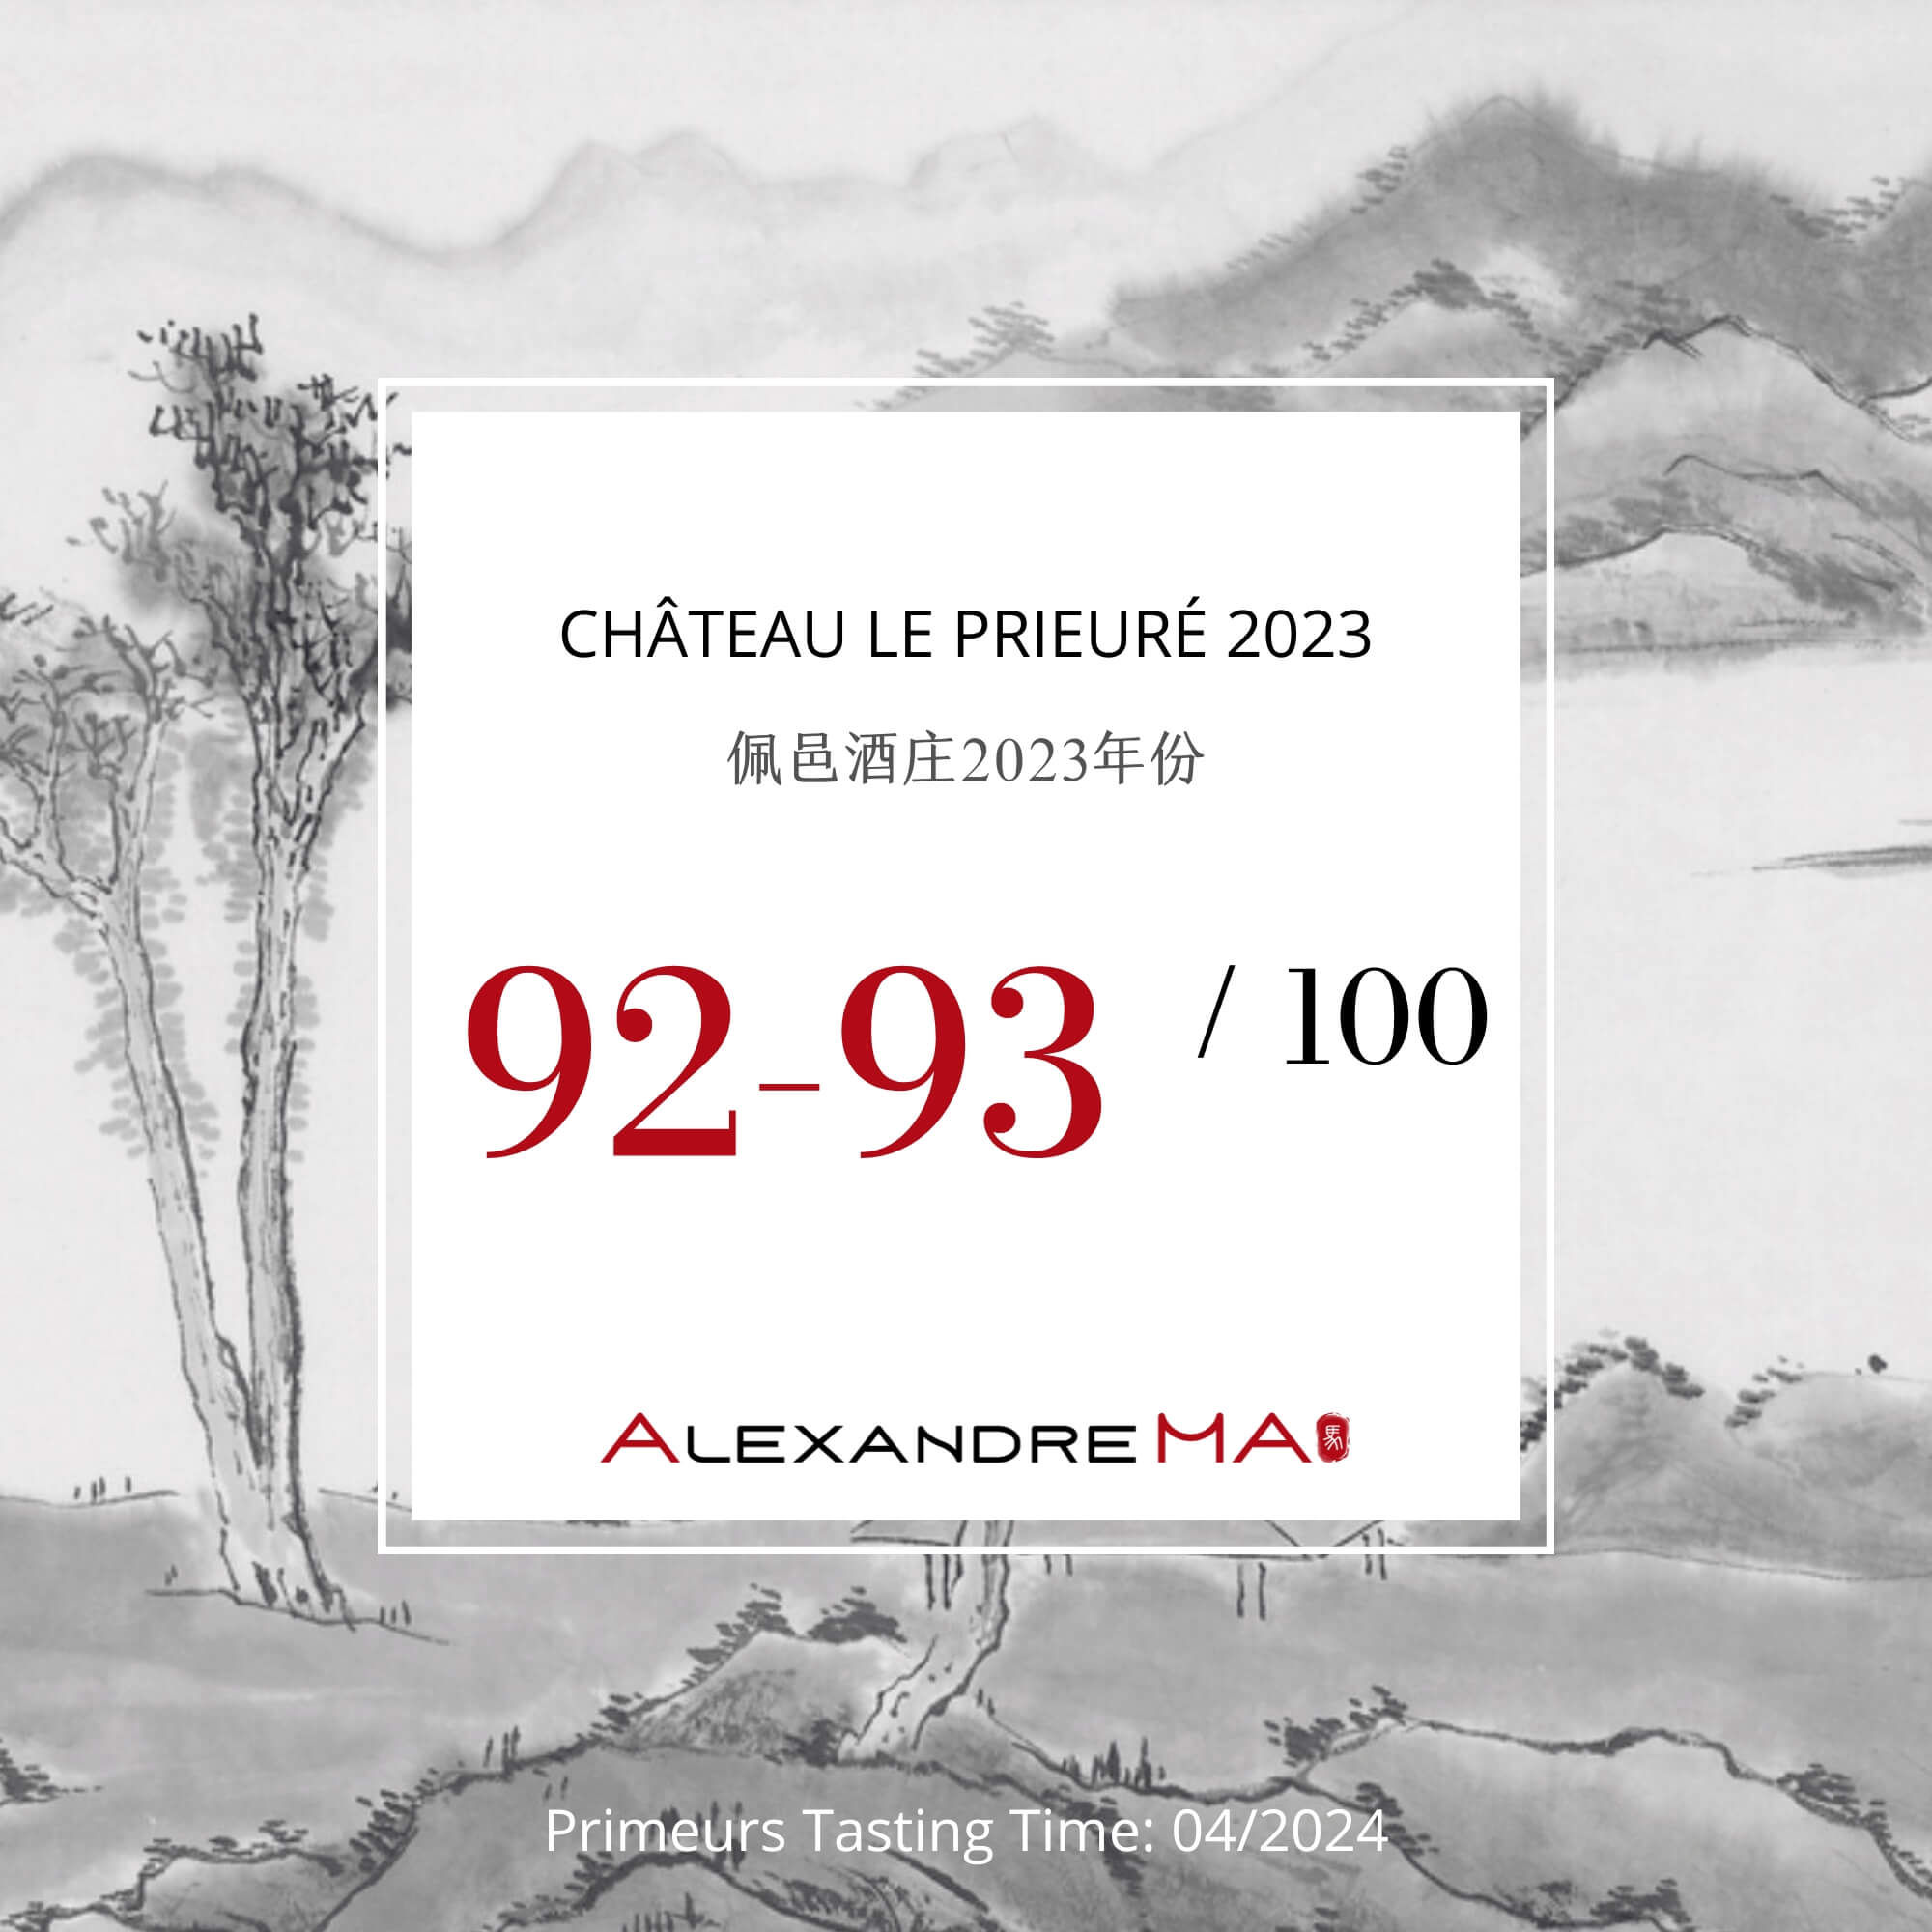 Château Le Prieuré 2023 Primeurs 佩邑酒庄 - Alexandre Ma